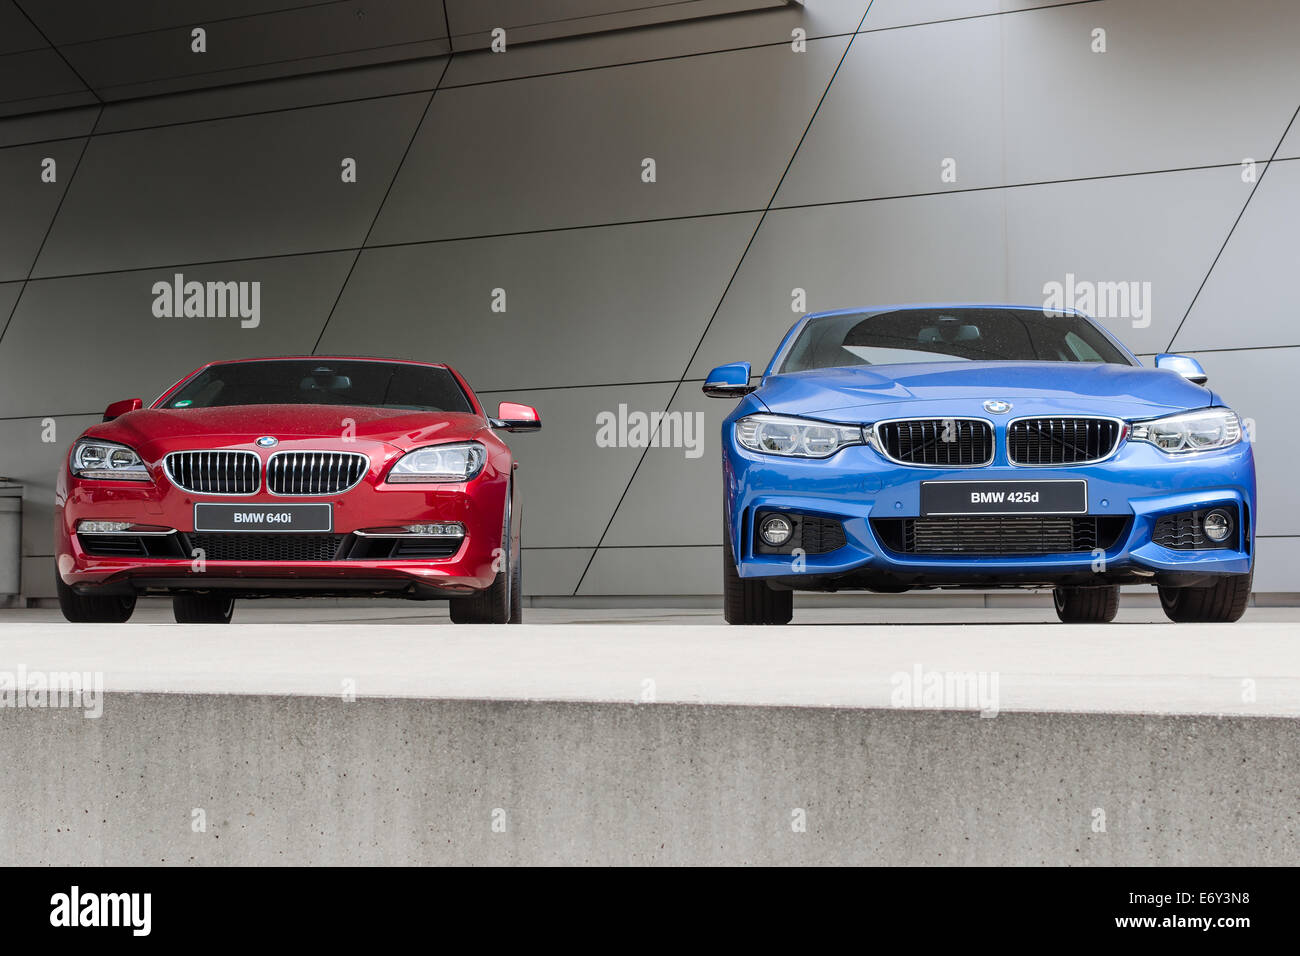 München, Deutschland - 9. August 2014: Neueste Generation der neuen Lineup BMW Luxus Modellautos. Nach Regen nass, zwei 640i und 425d vorne Stockfoto